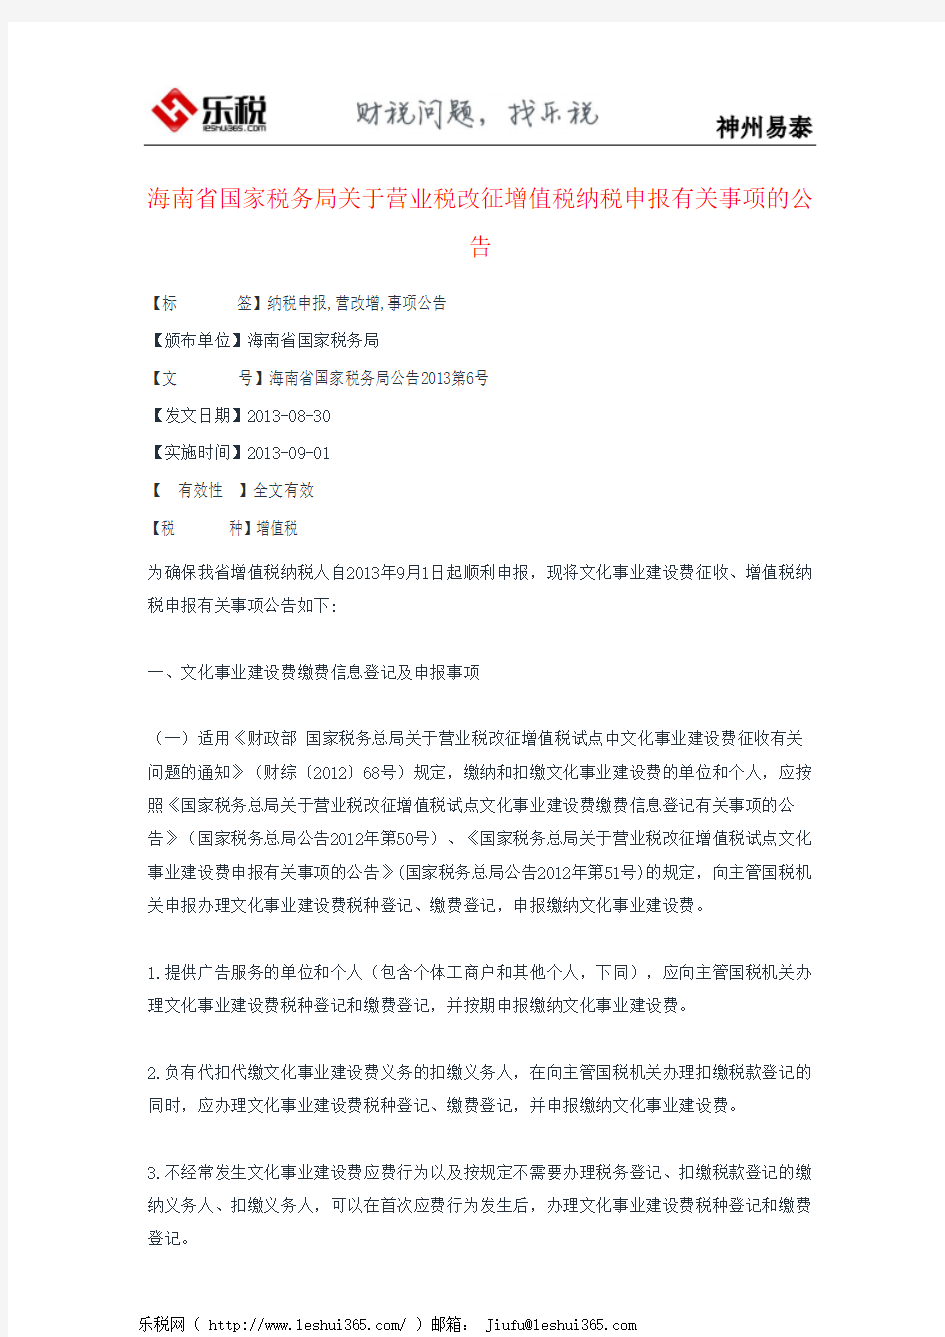 海南省国家税务局关于营业税改征增值税纳税申报有关事项的公告